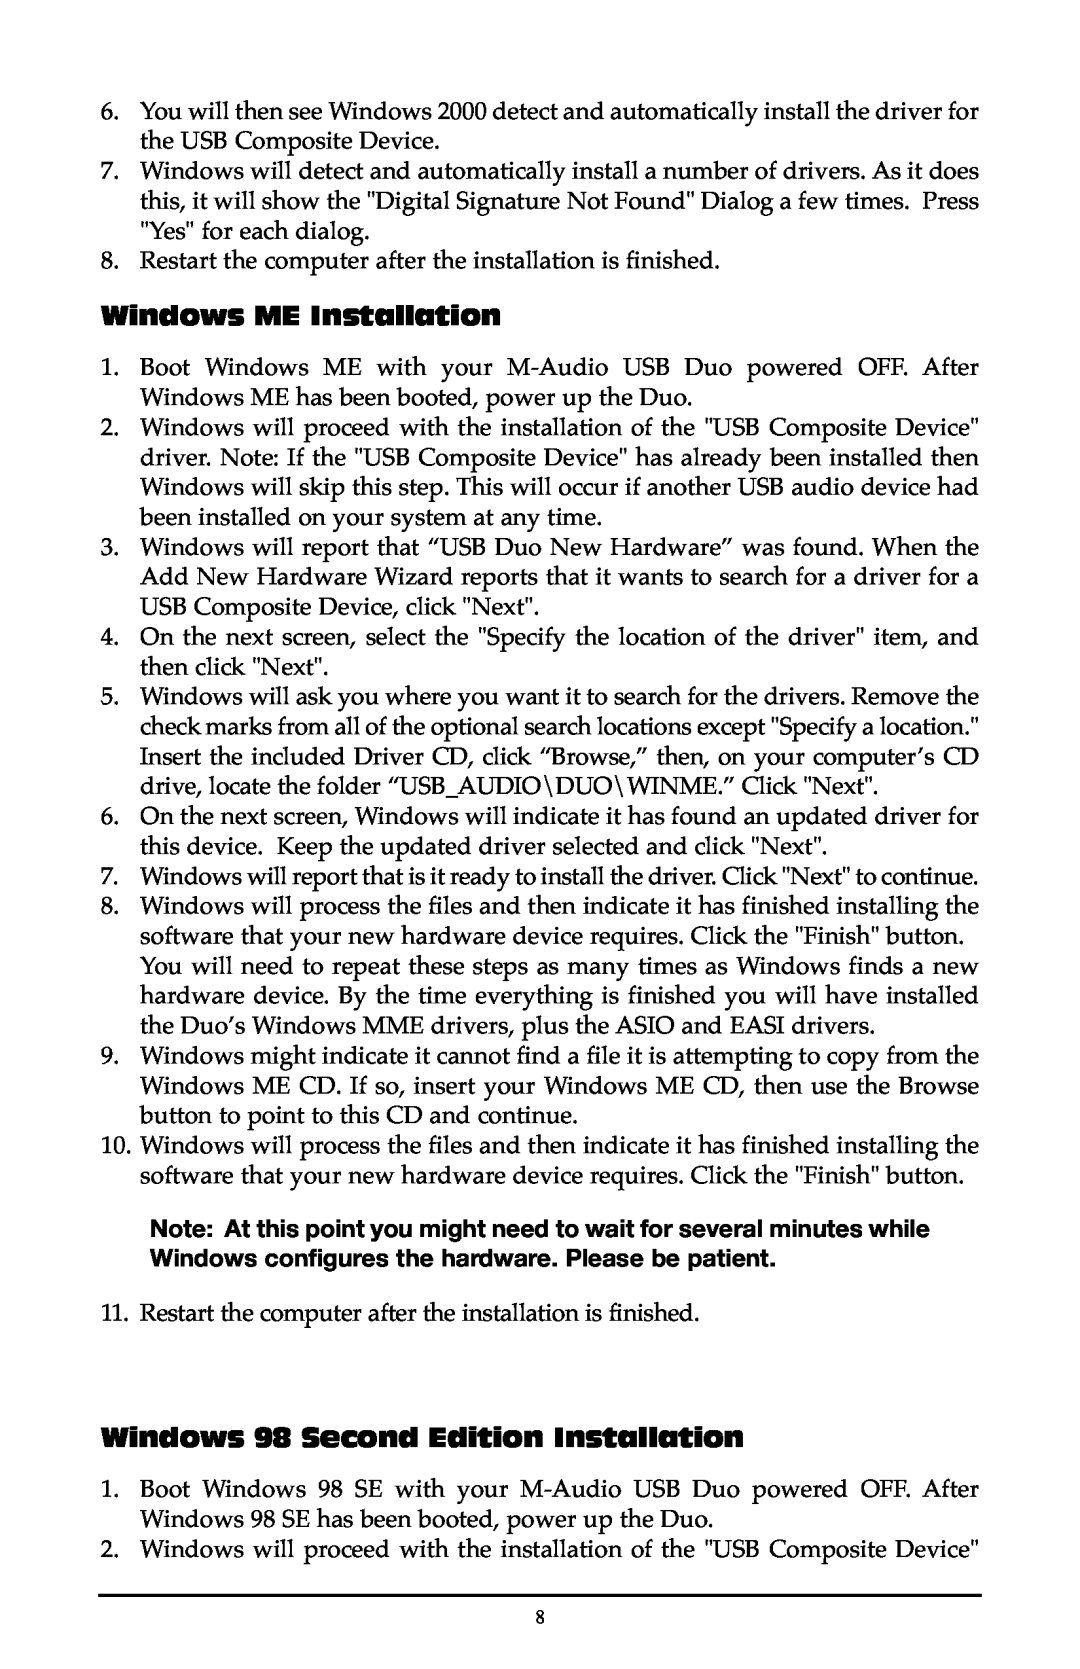 M-Audio Duo quick start Windows ME Installation, Windows 98 Second Edition Installation 